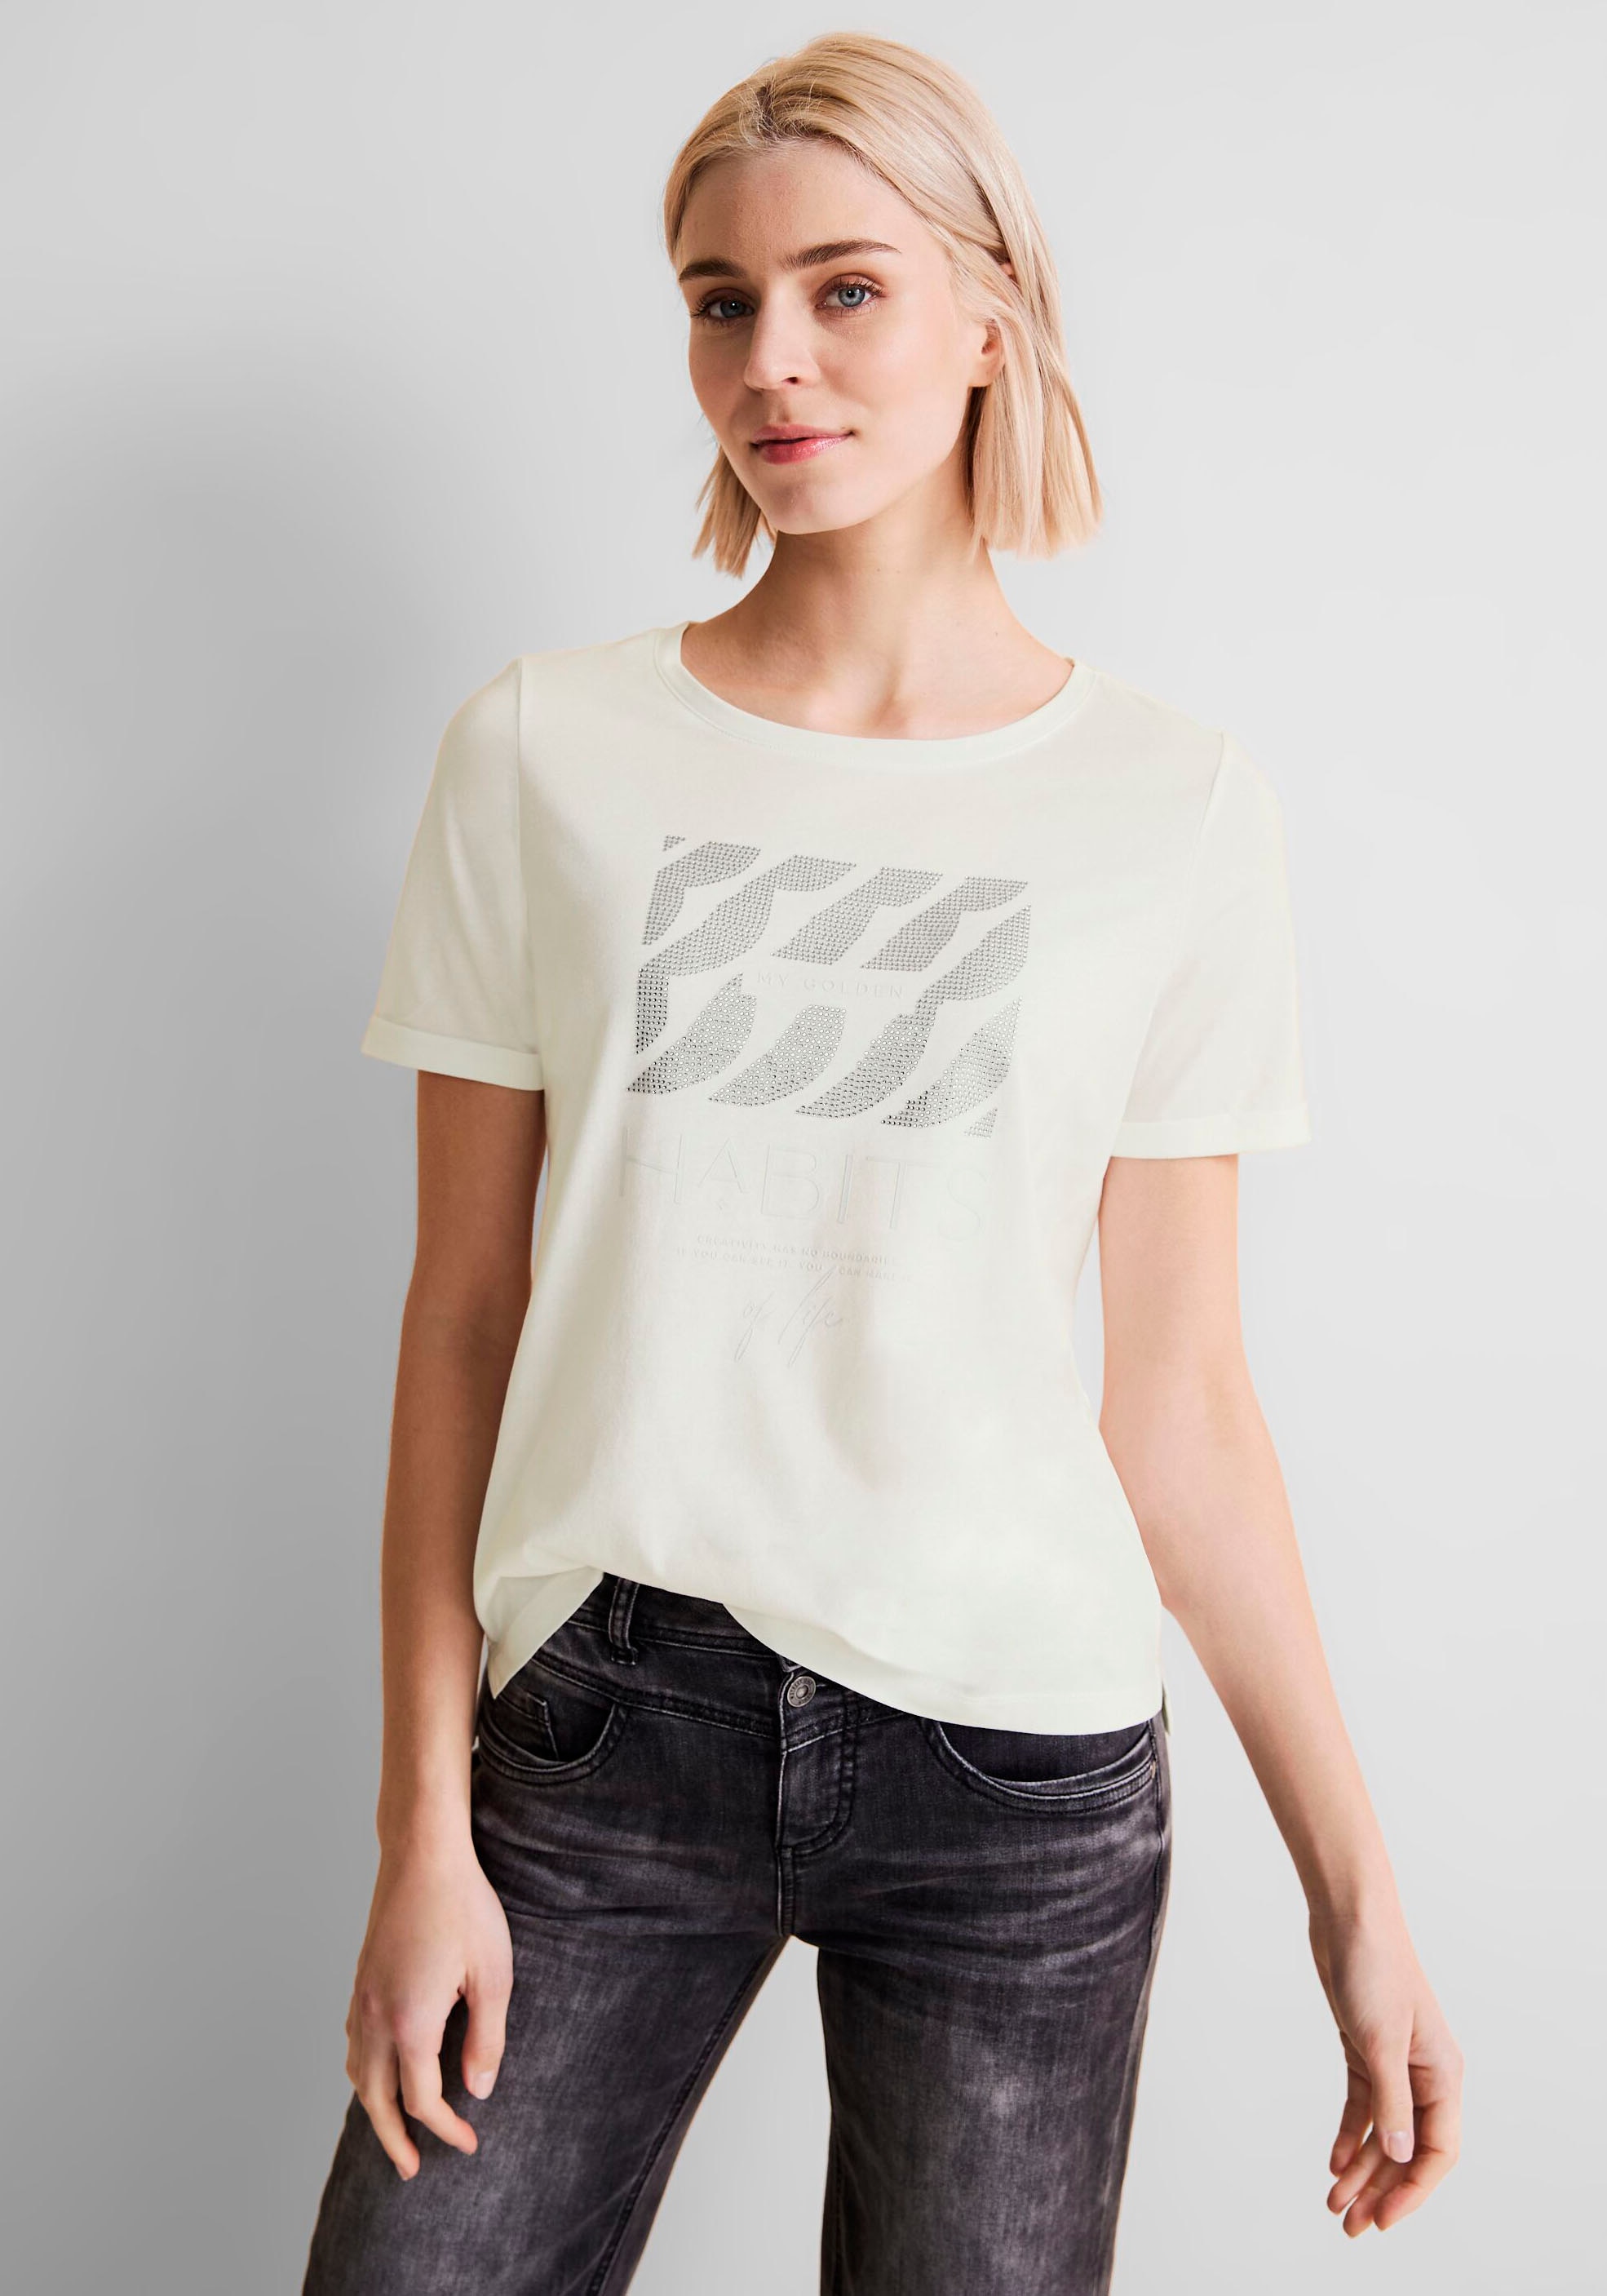 Aufdruck silberfarbenem online T-Shirt, STREET mit | ONE kaufen I\'m walking